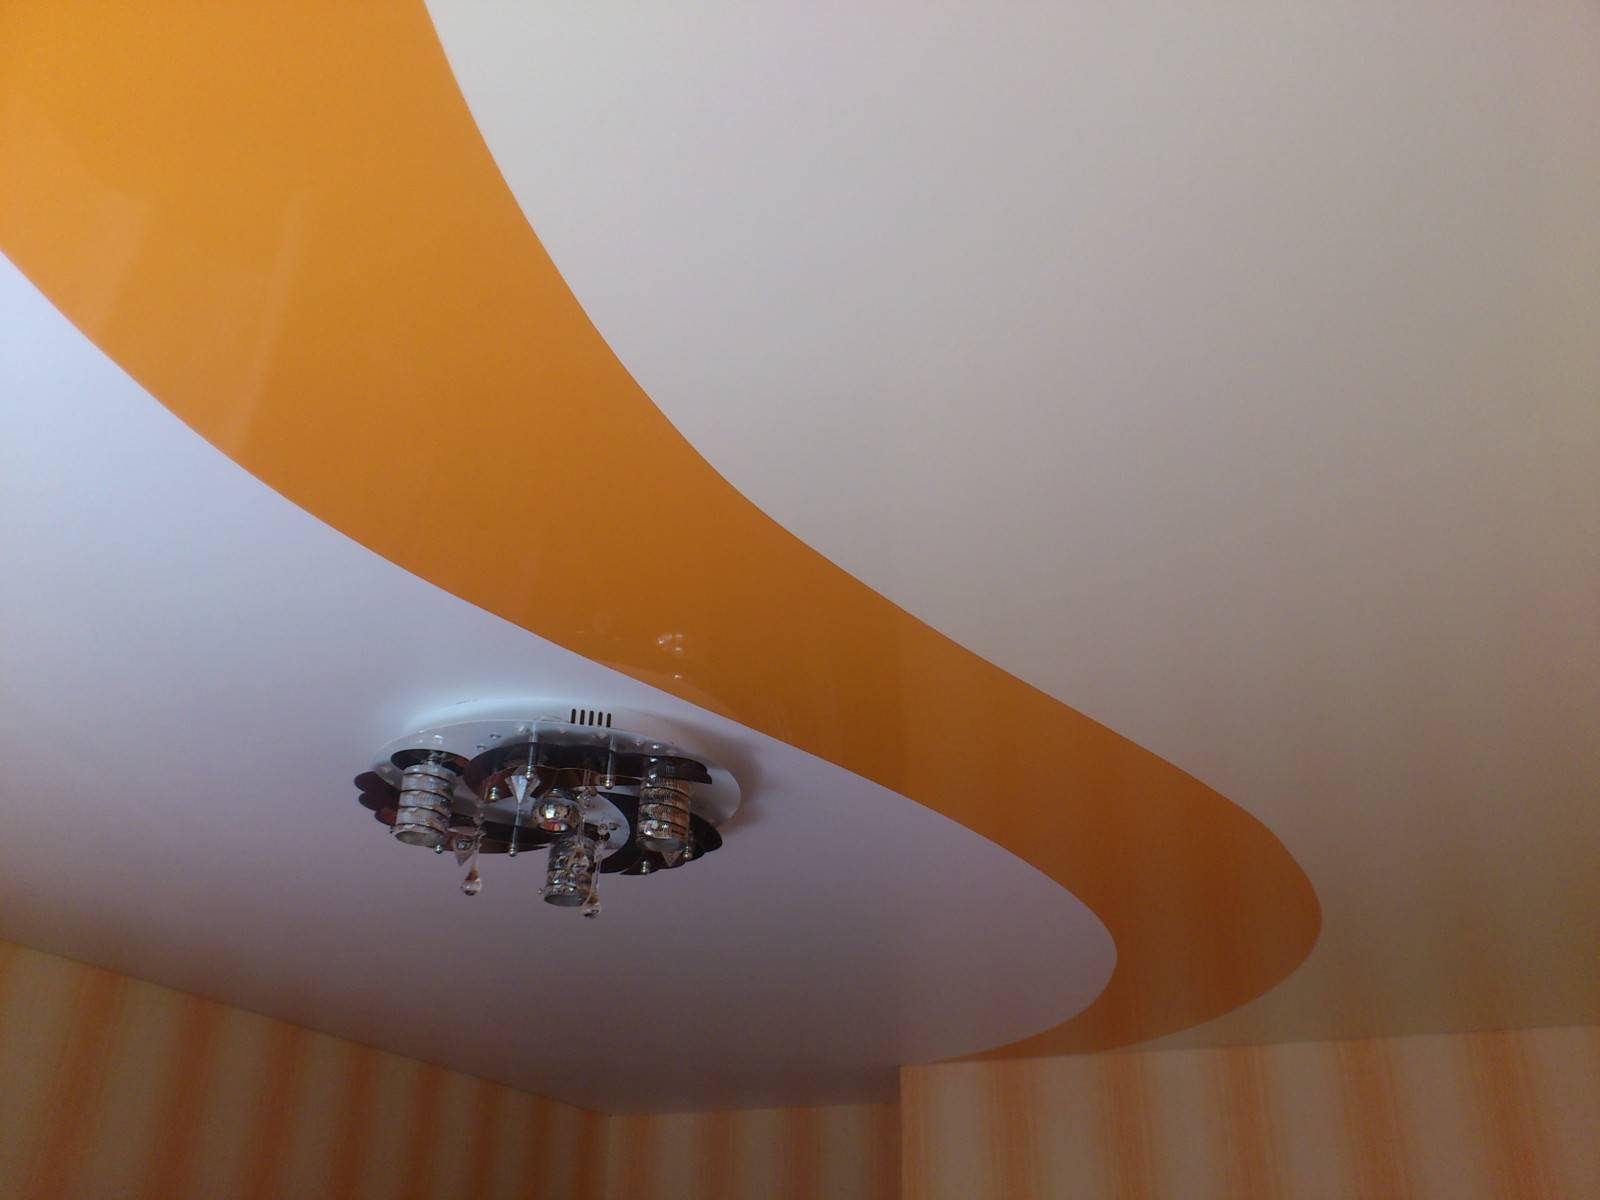 Двухцветные натяжные потолки: виды, сочетания, дизайн, формы спаек двух цветов, фото в интерьере